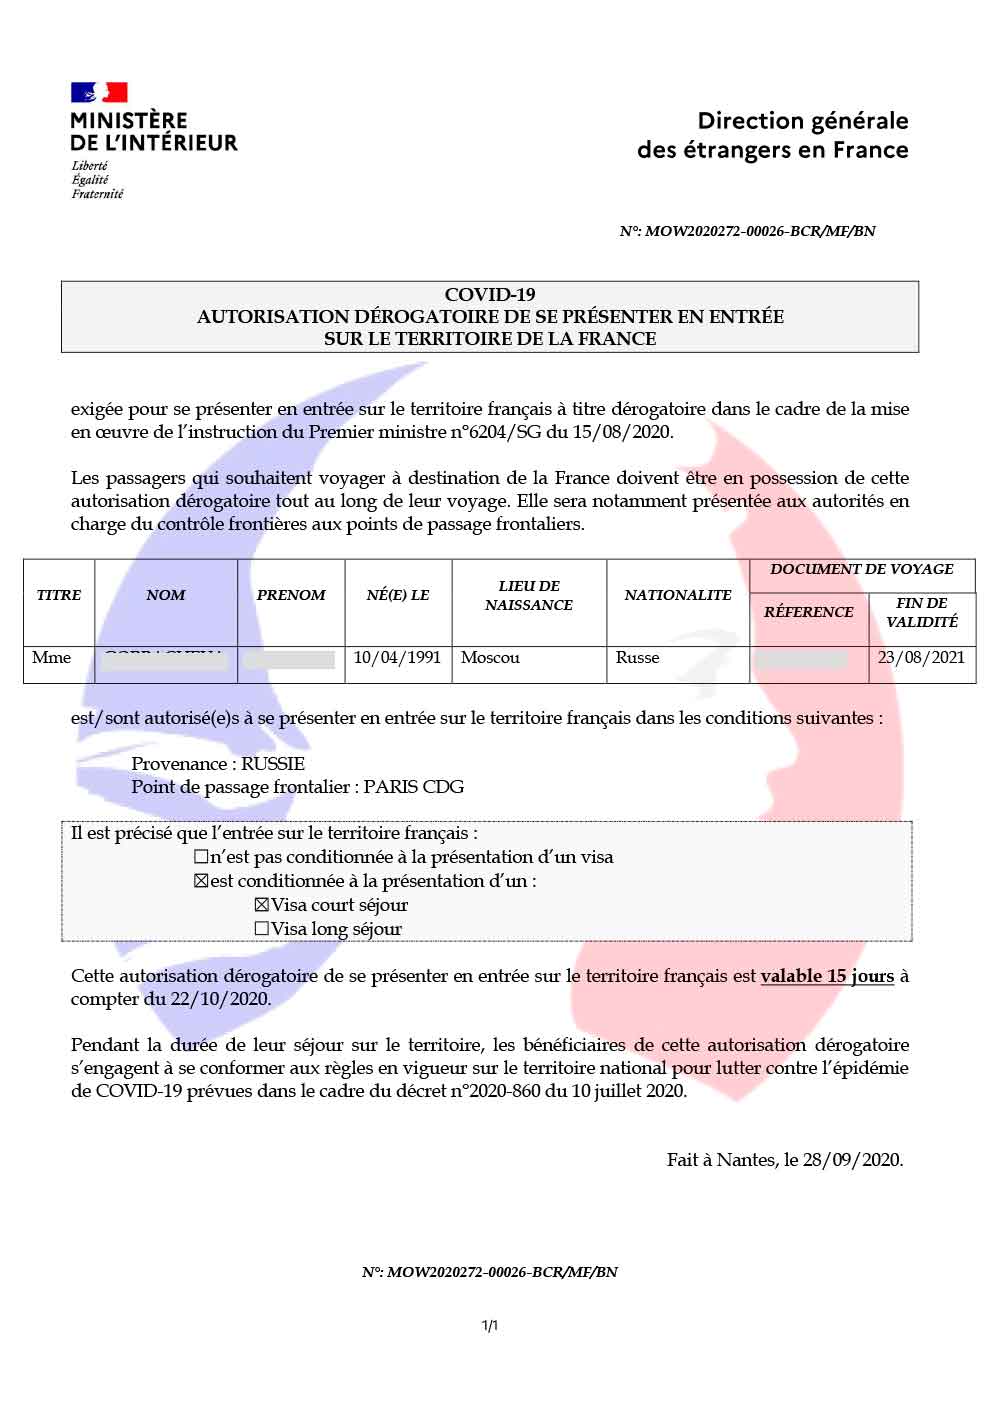 Требования для въезда во Францию на французском